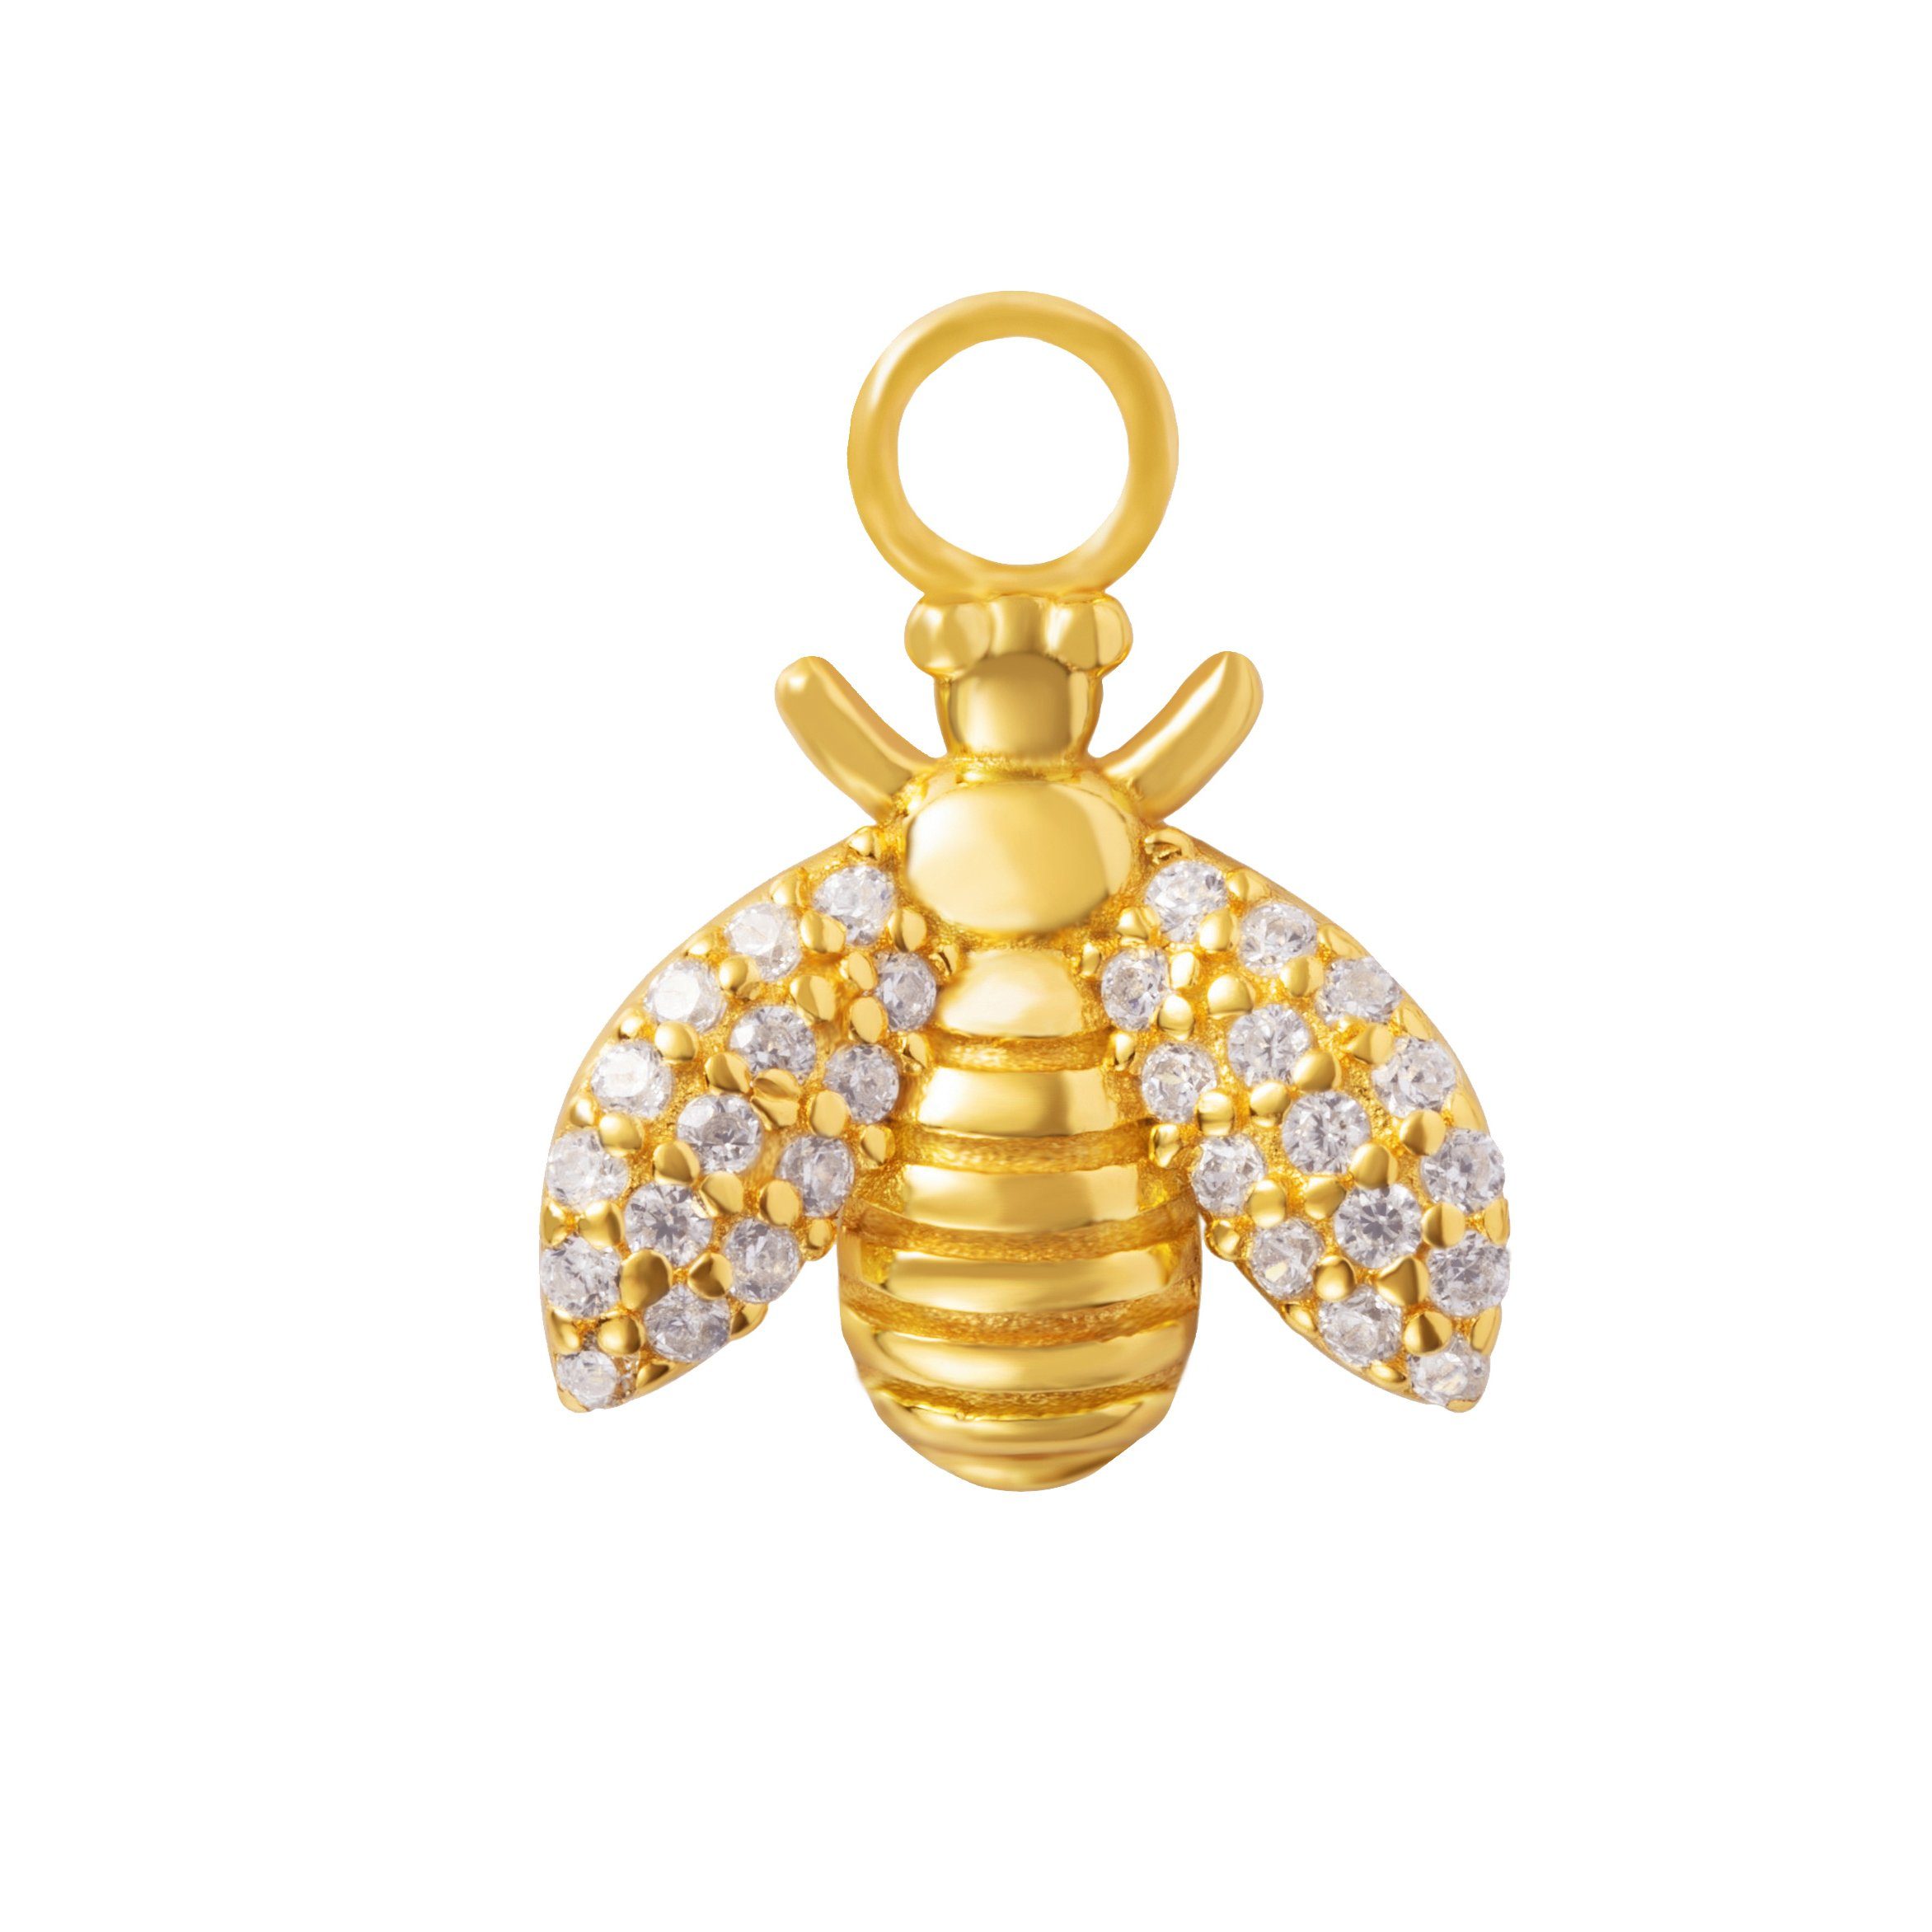 Brandlinger Einhänger für Ohrschmuck Anhänger Livorno, Bienenanhänger Silber 925 vergoldet, Weiße Zirkoniasteine